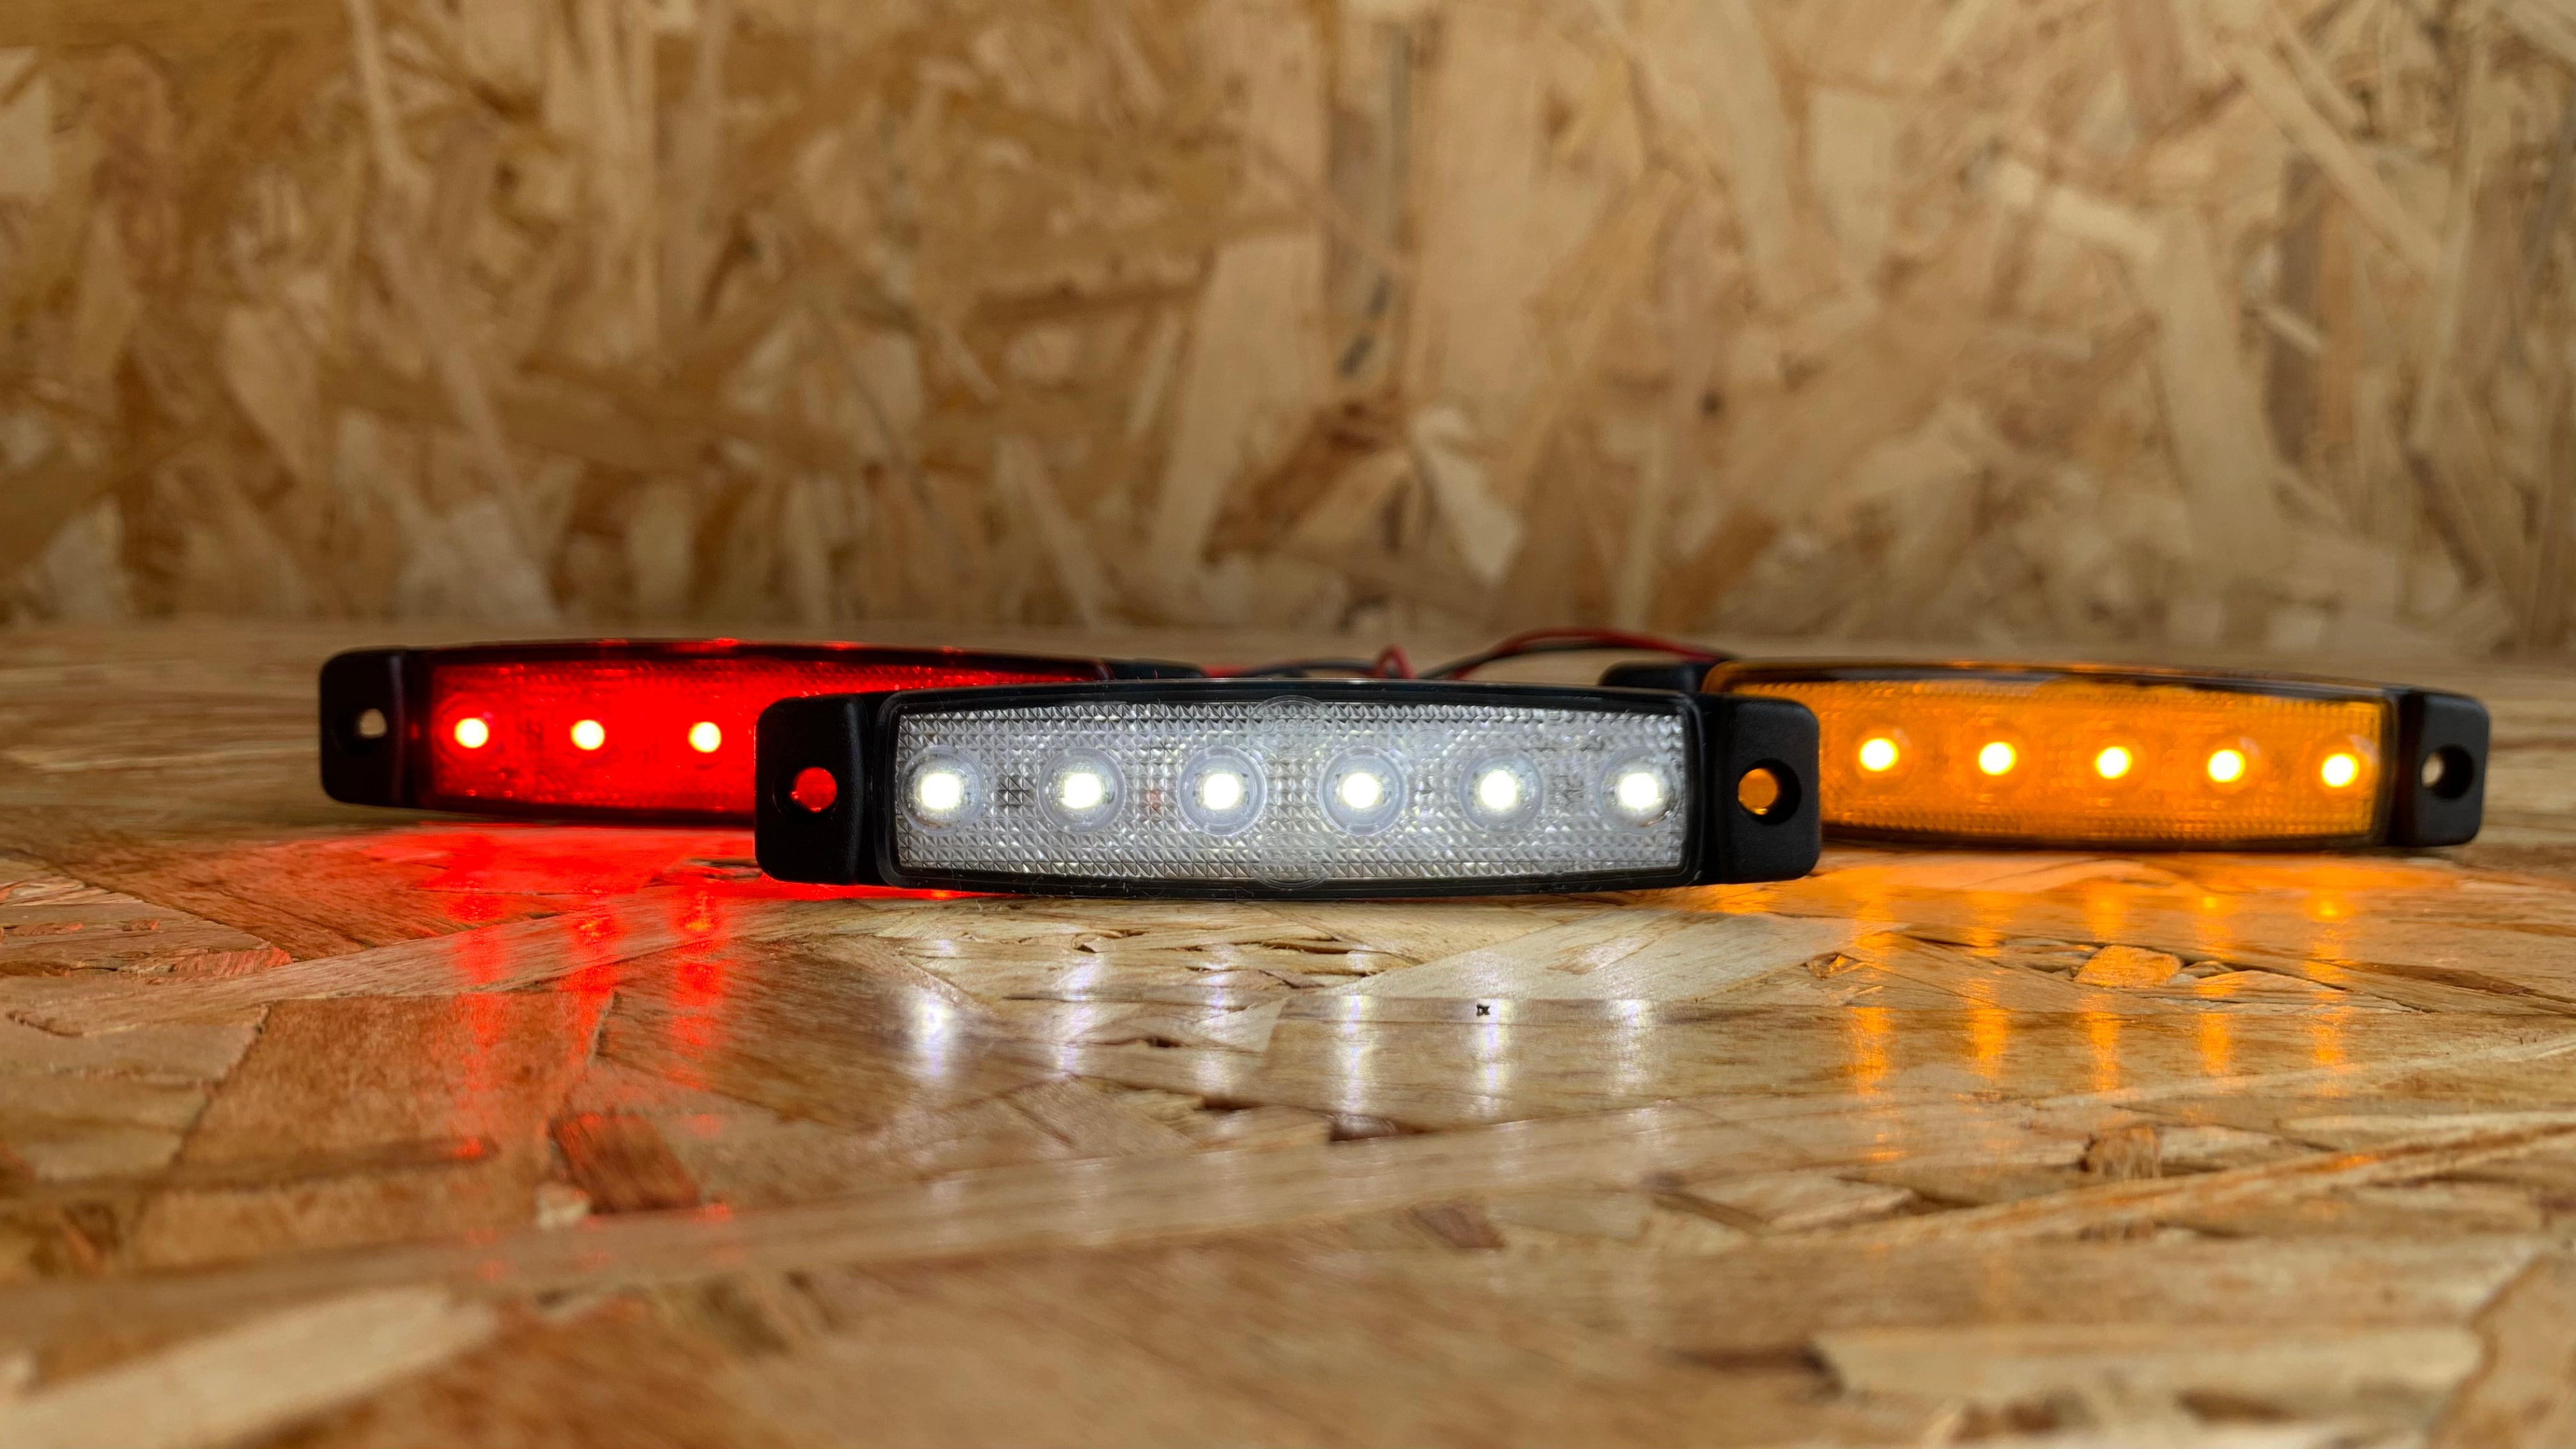 Llum LED posterior Slimline vermella per a camions - Llums marcadors davanters i posteriors - spo-cs-disabled - spo-default - spo-disable